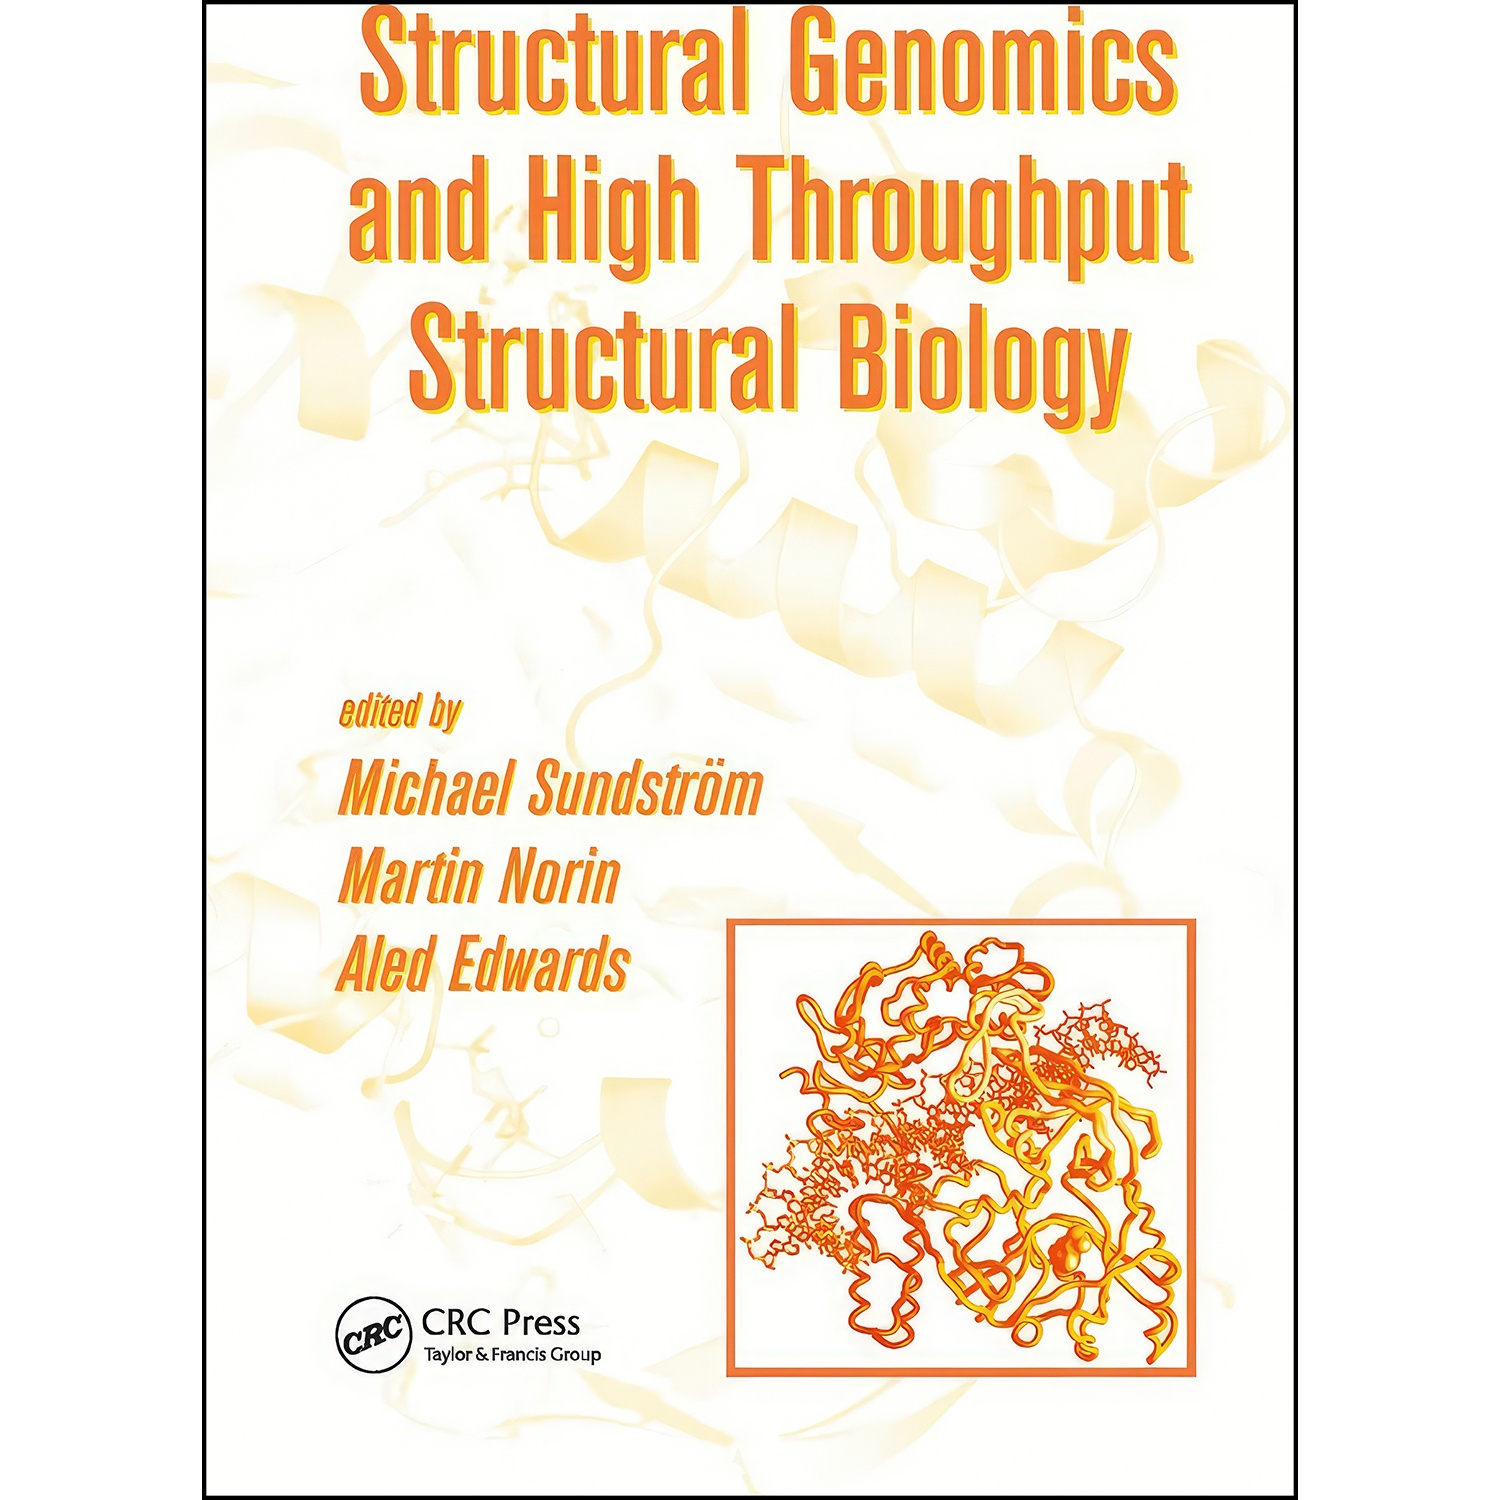 کتاب Structural Genomics and High Throughput Structural Biology اثر جمعي از نويسندگان انتشارات تازه ها